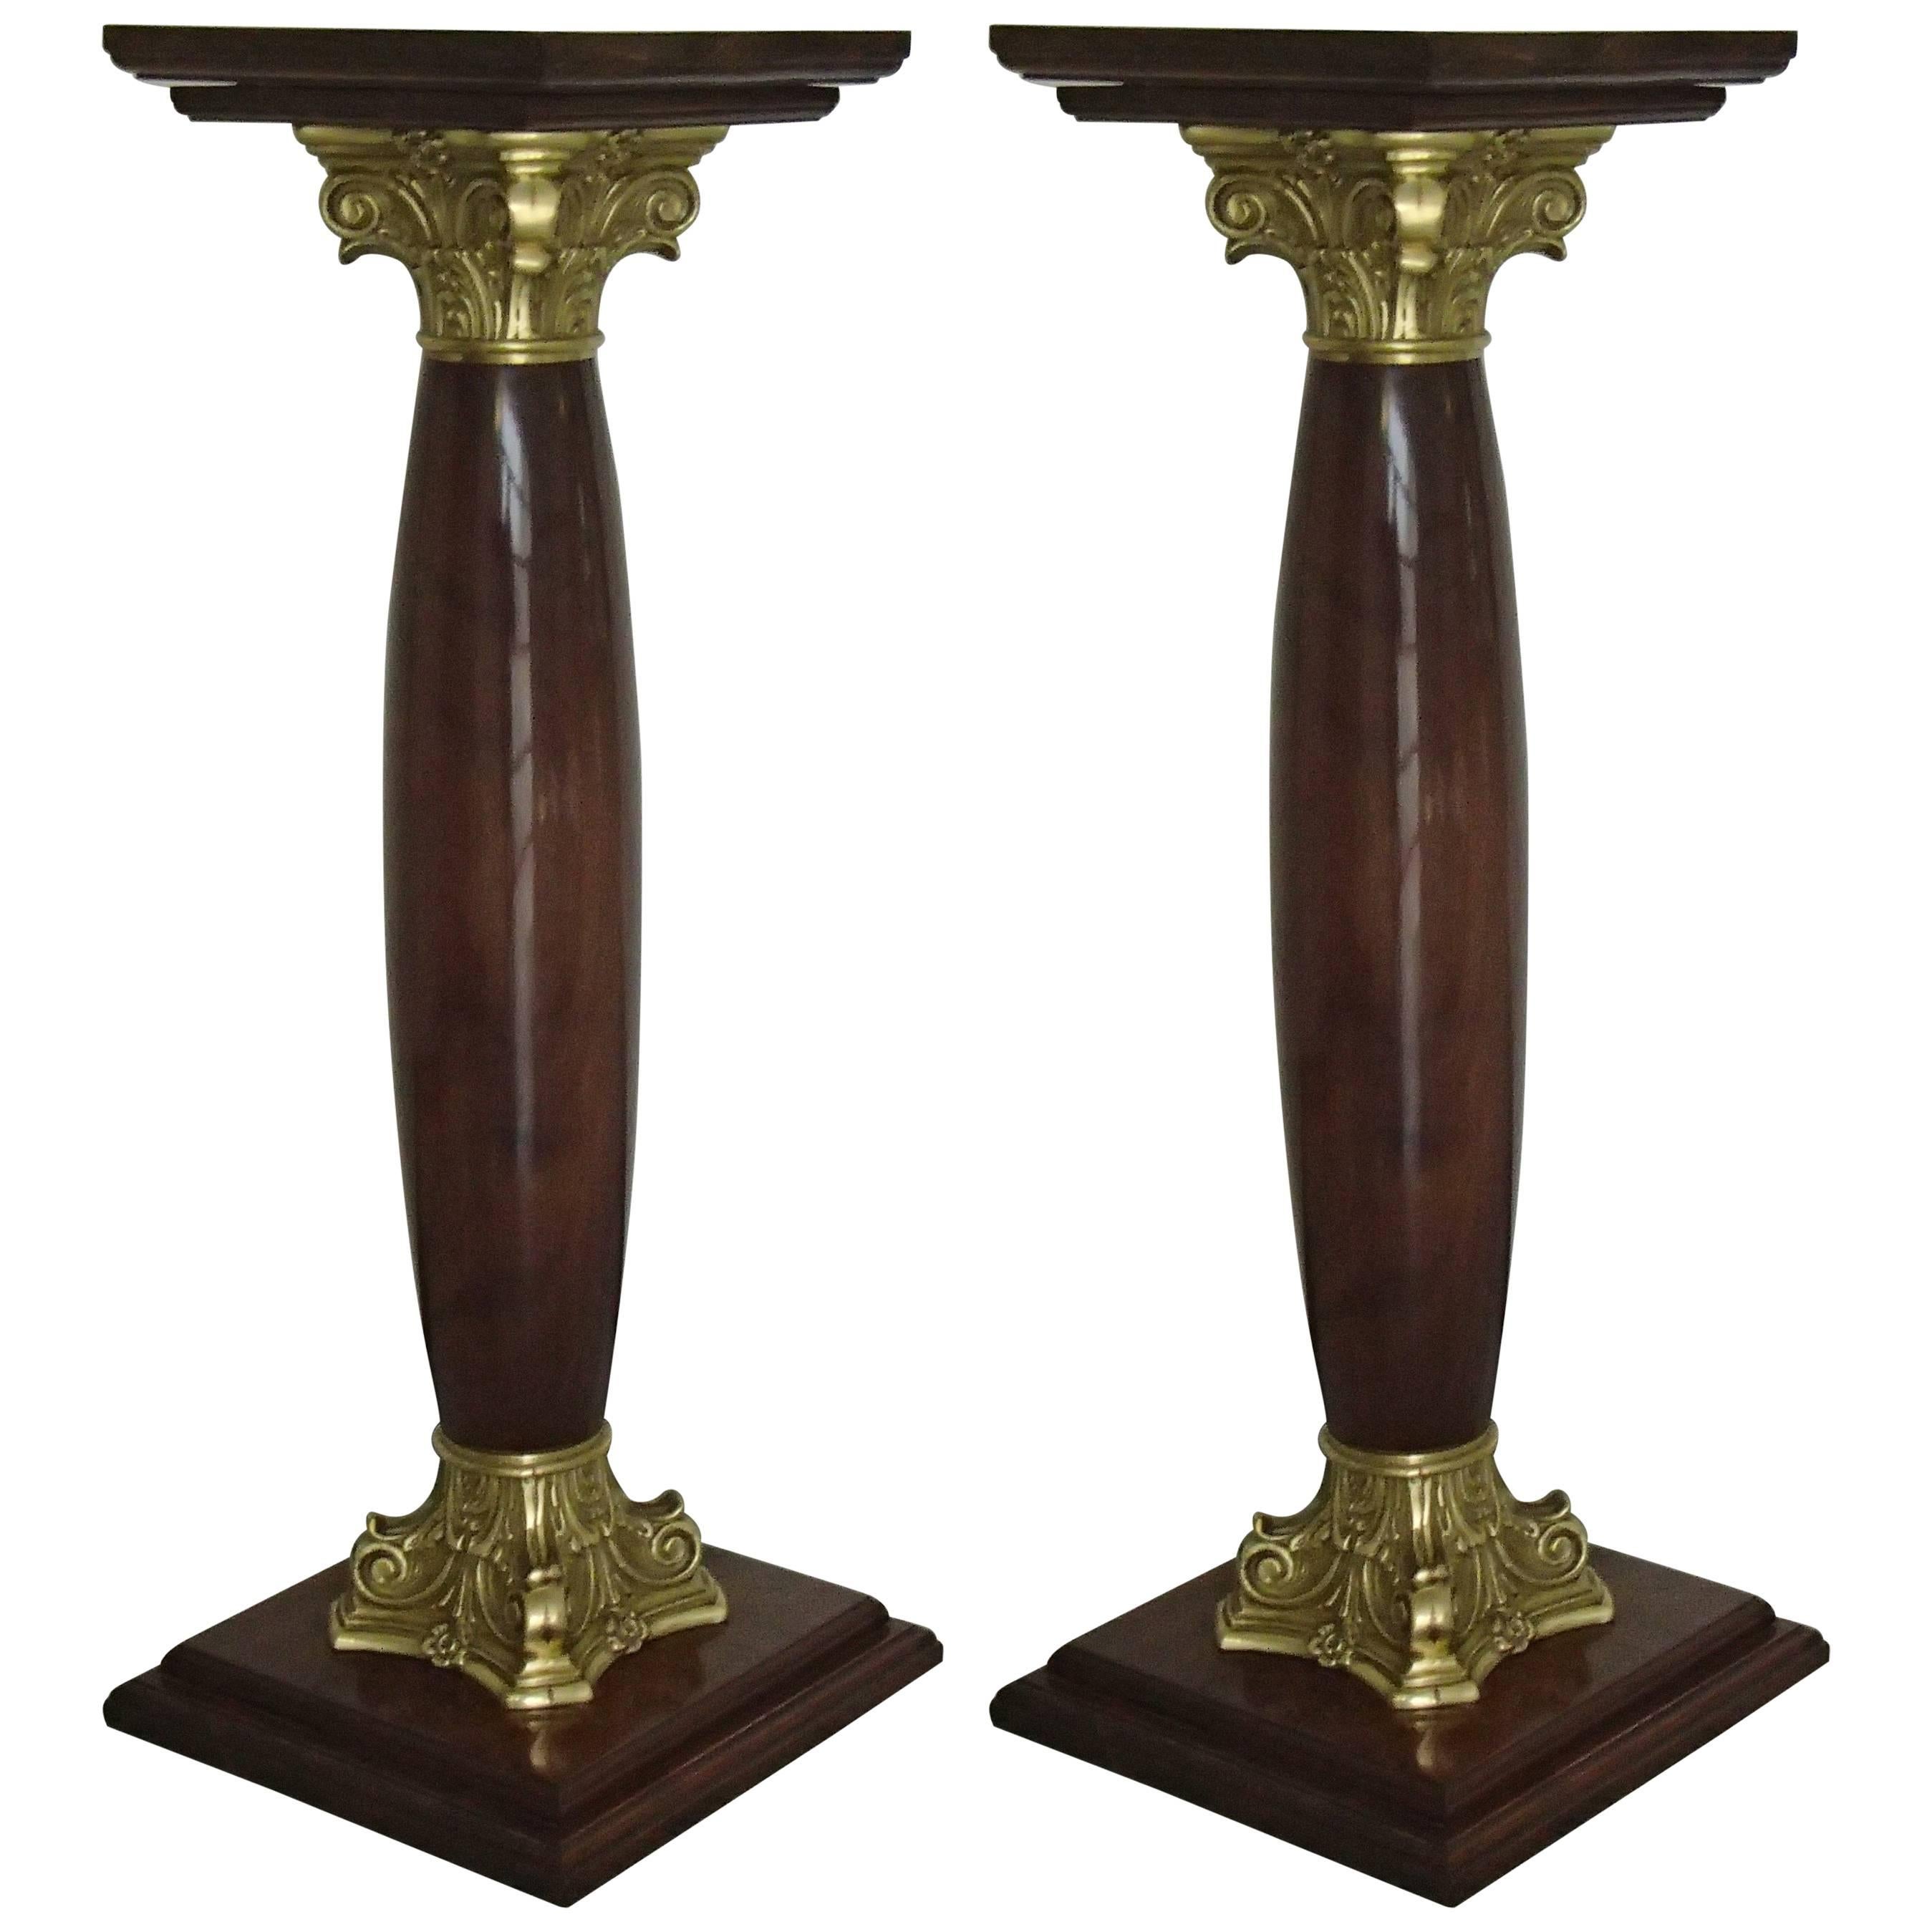 Midcentury Decorative Pair of Pedestals Walnut with Brass